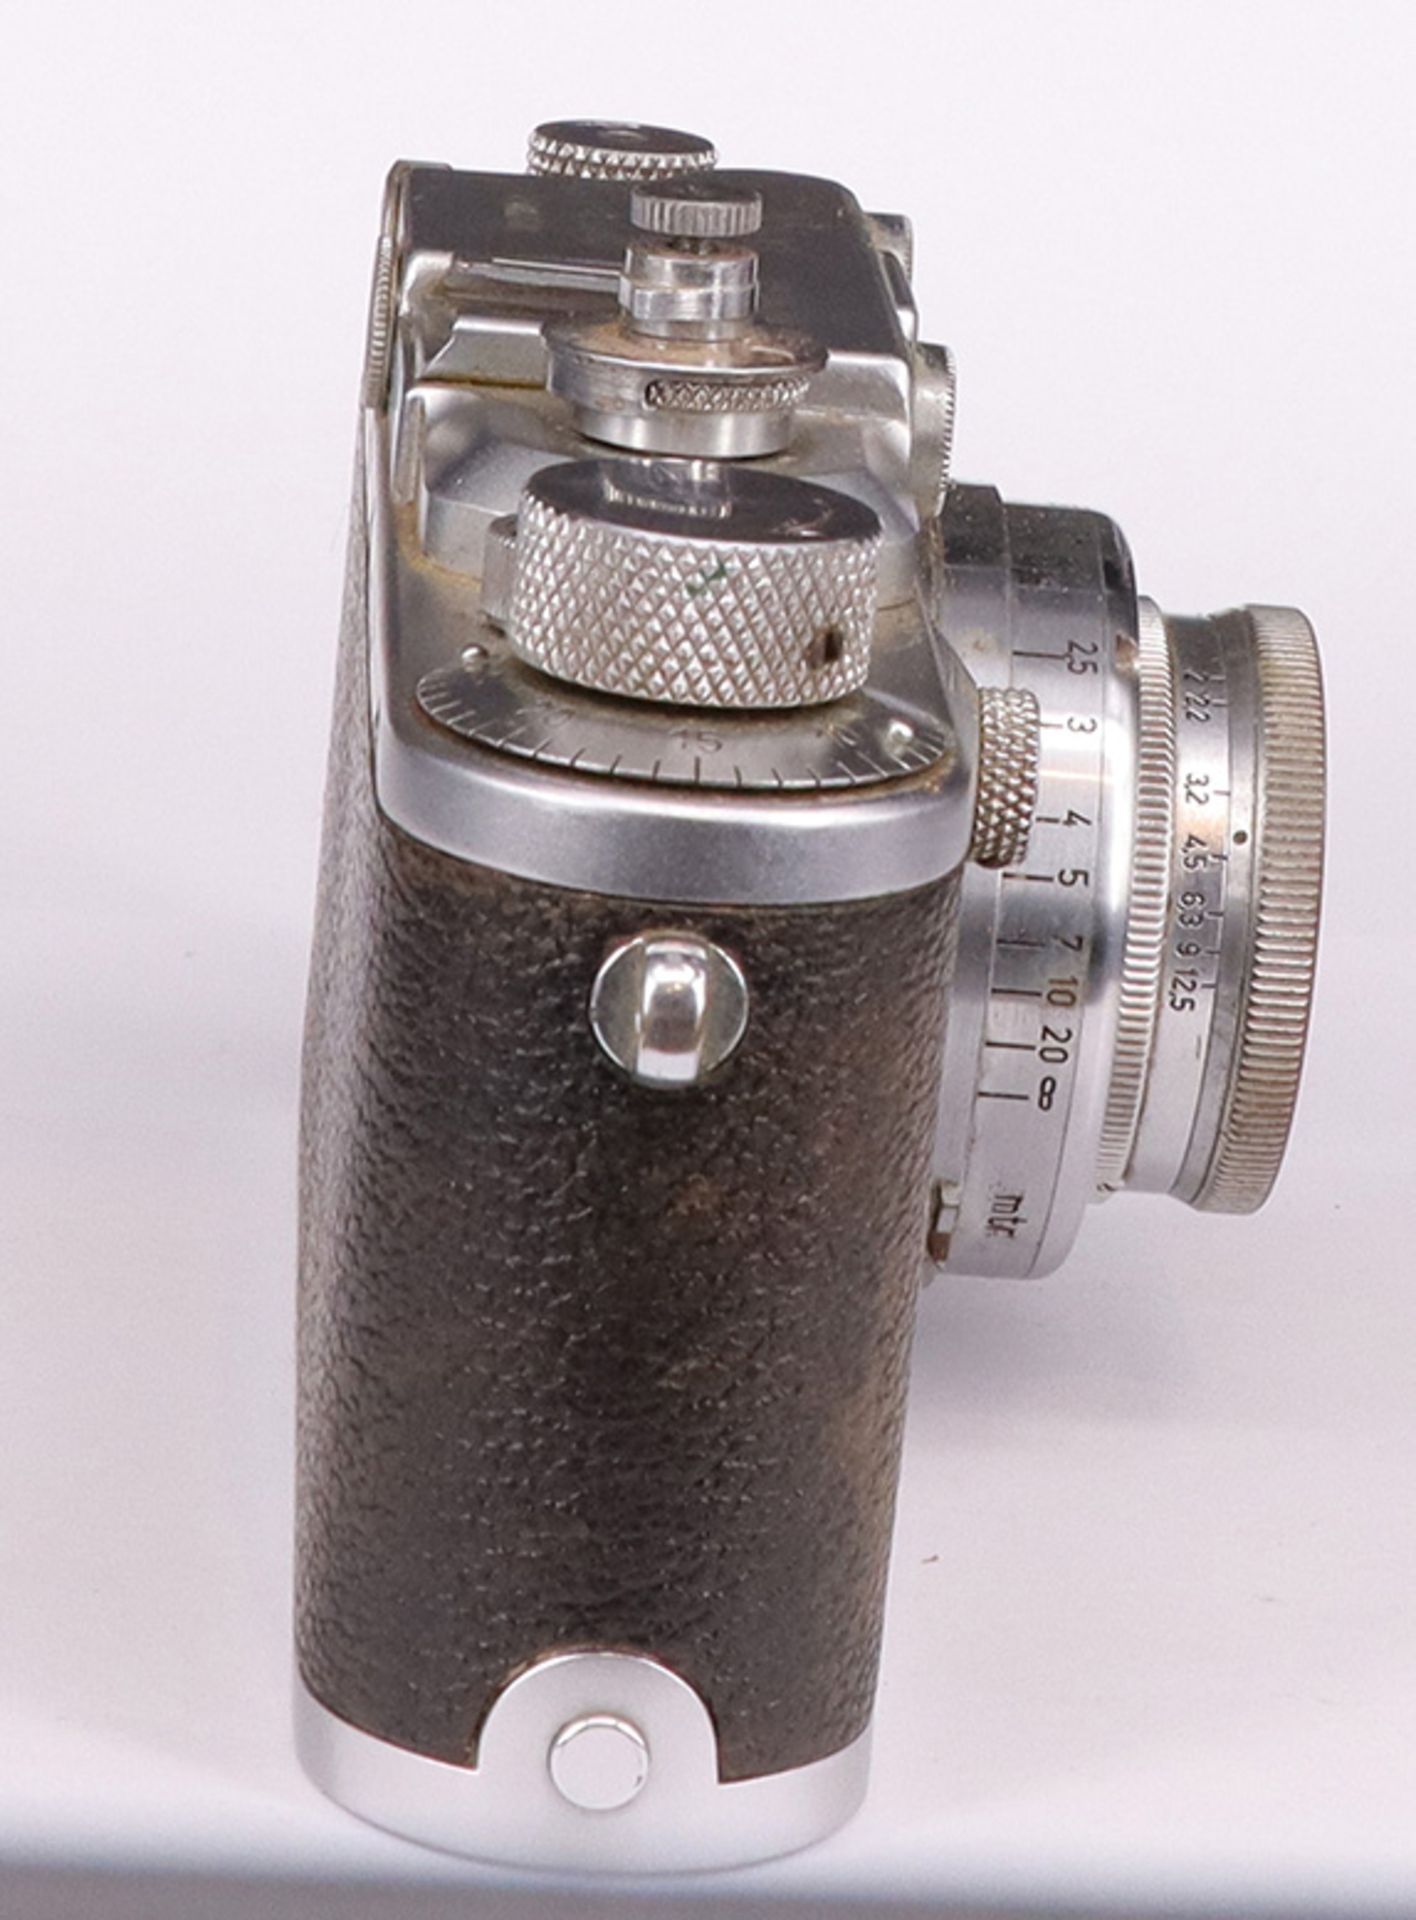 Leica, D.R.P. Ernst Leitz, Wetzlar, Kamera Nr. 261592, Objektiv f=5 cm 1:2, No 405024, Zustand: - Image 3 of 6